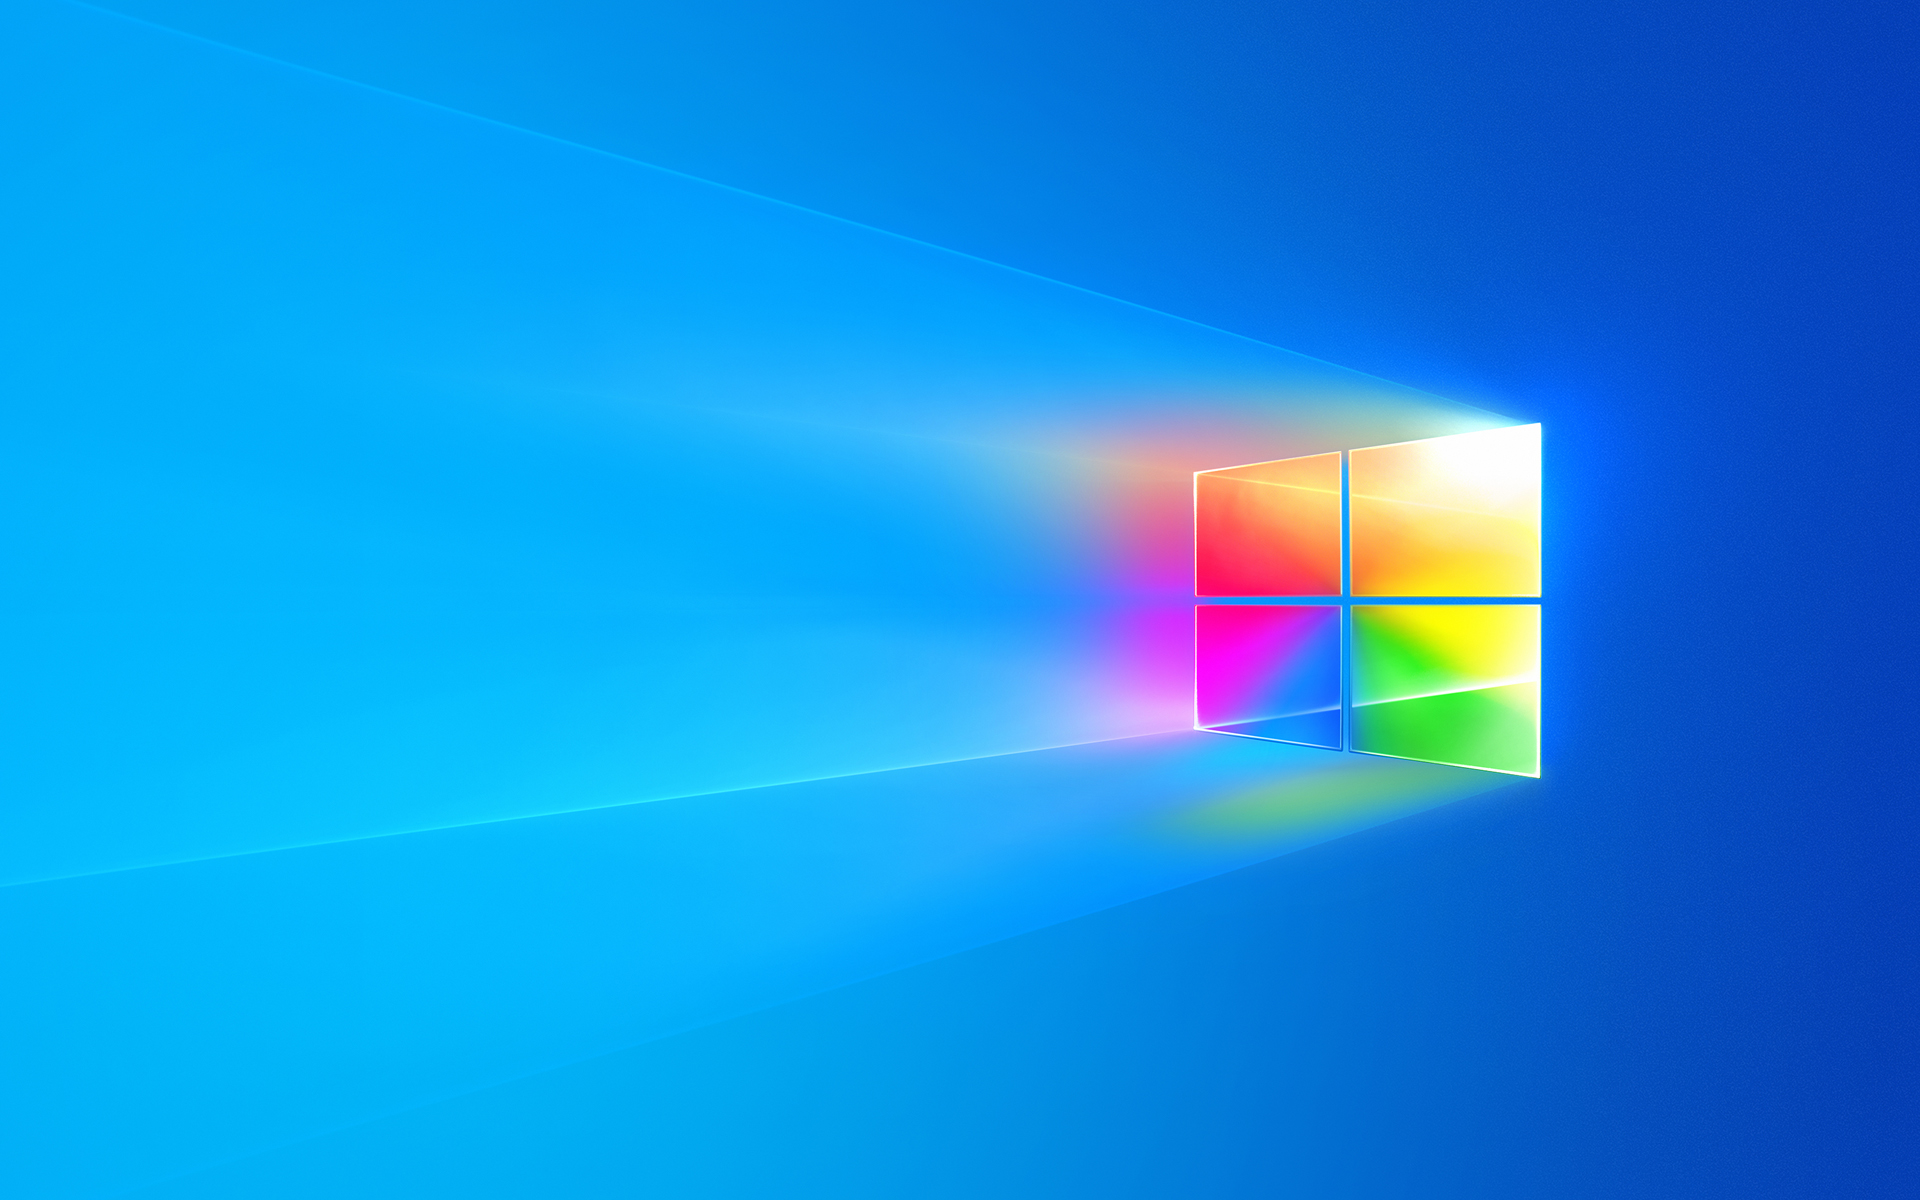 Hàng loạt gói hình nền Windows 10 Premium chất lượng 4K đang miễn phí  download ngay